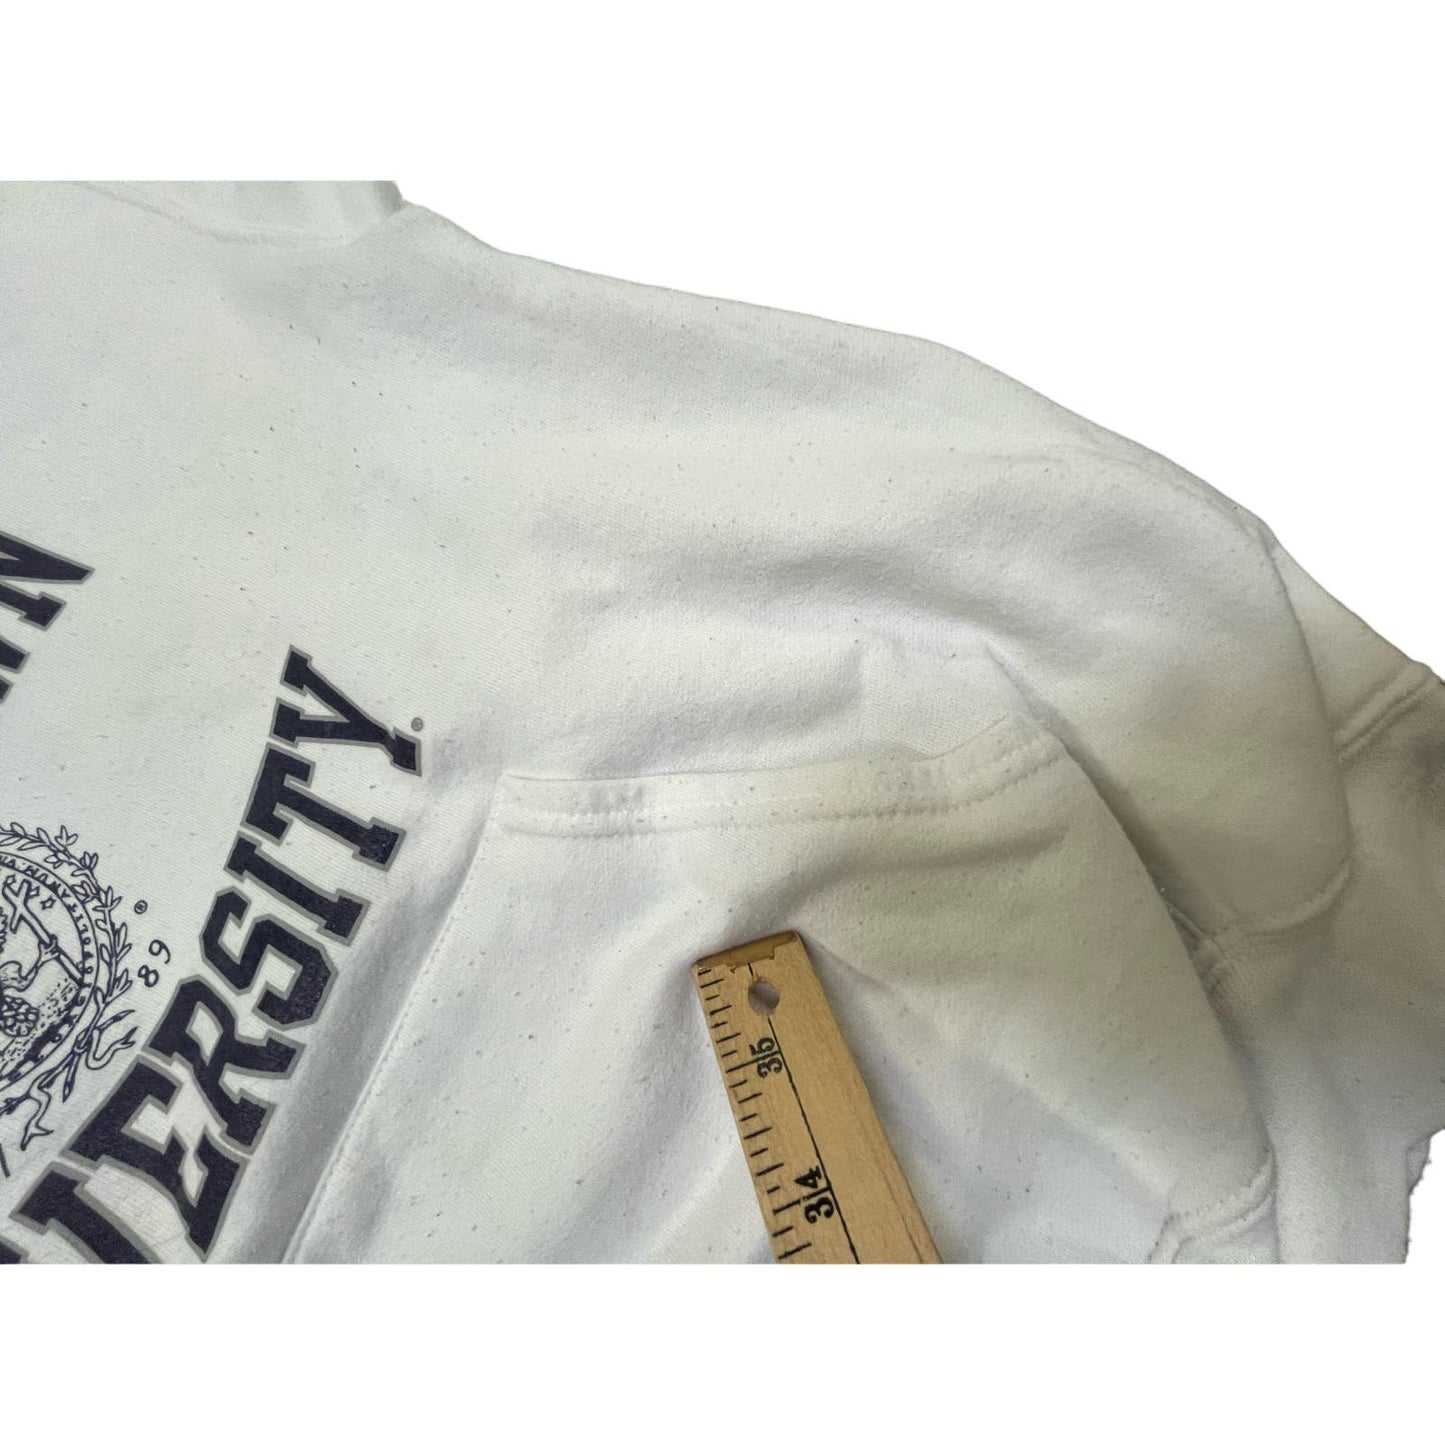 Y2K Georgetown University Pullover White Sweatshirt Hoodie Small